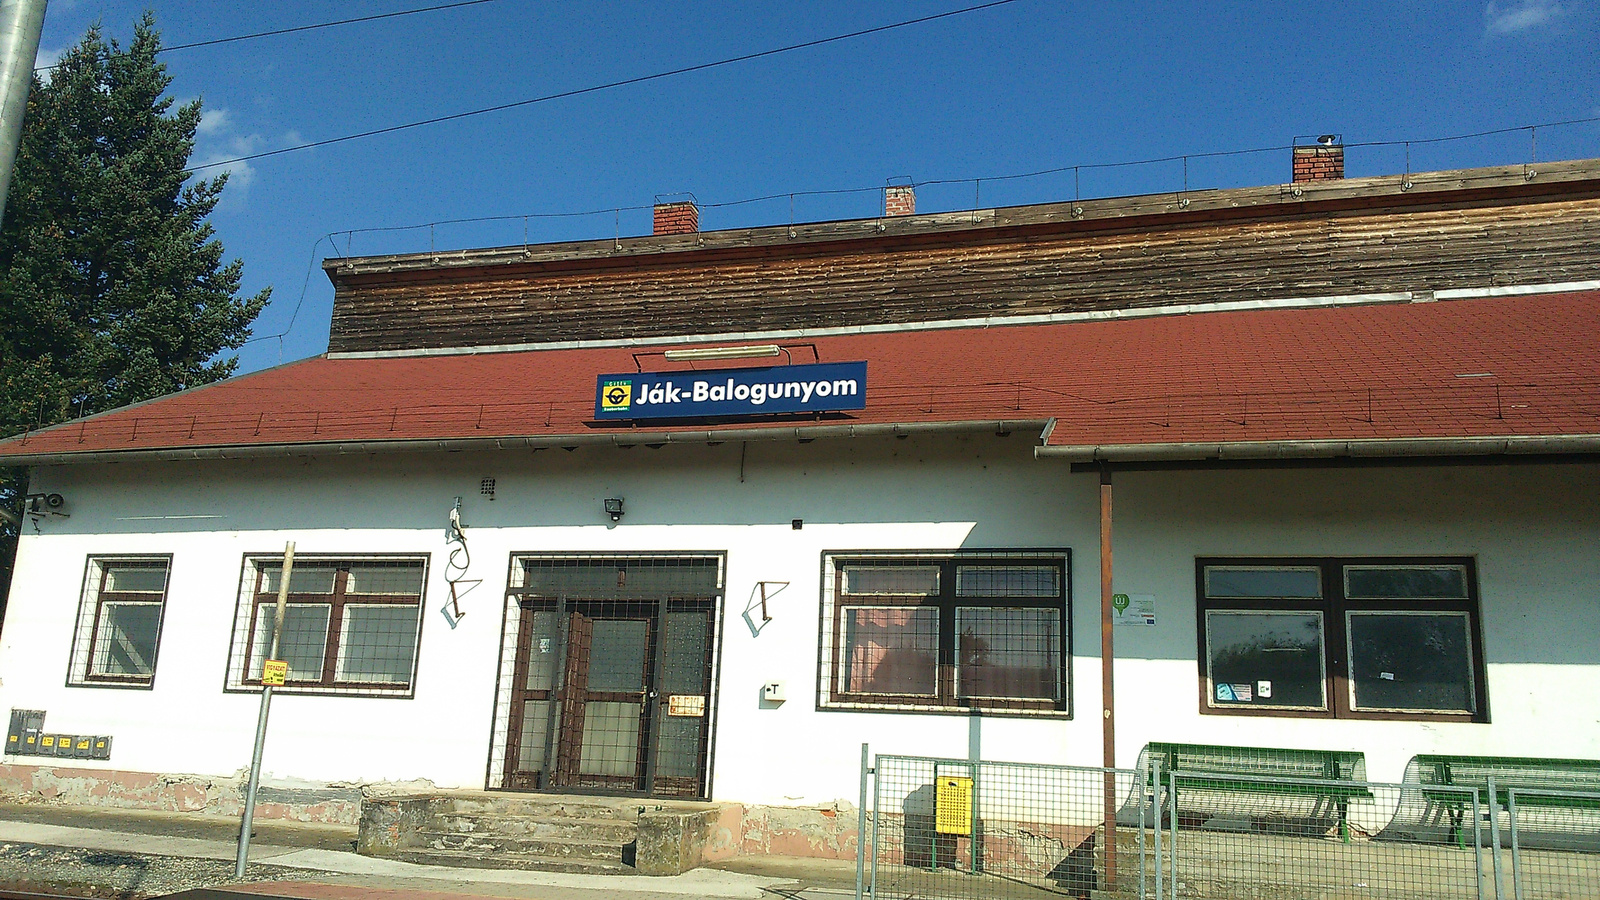 Ják-Balagunyom állomásépülete jobboldalról fényképezve